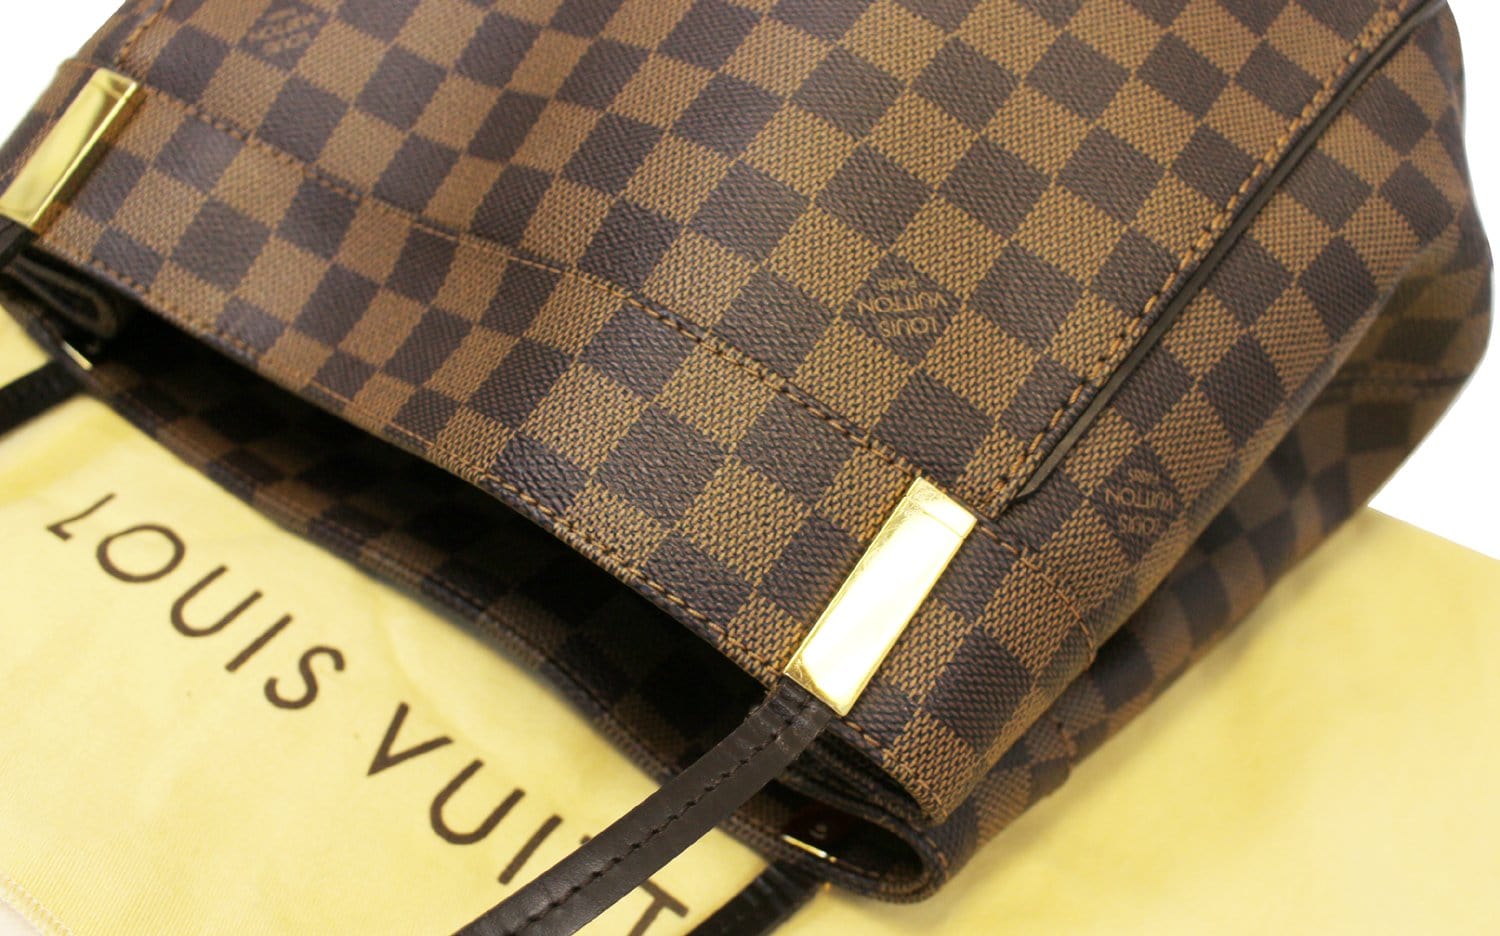 Louis Vuitton 2021 Damier Ebene Odéon MM w/Strap - Brown Shoulder Bags,  Handbags - LOU486362